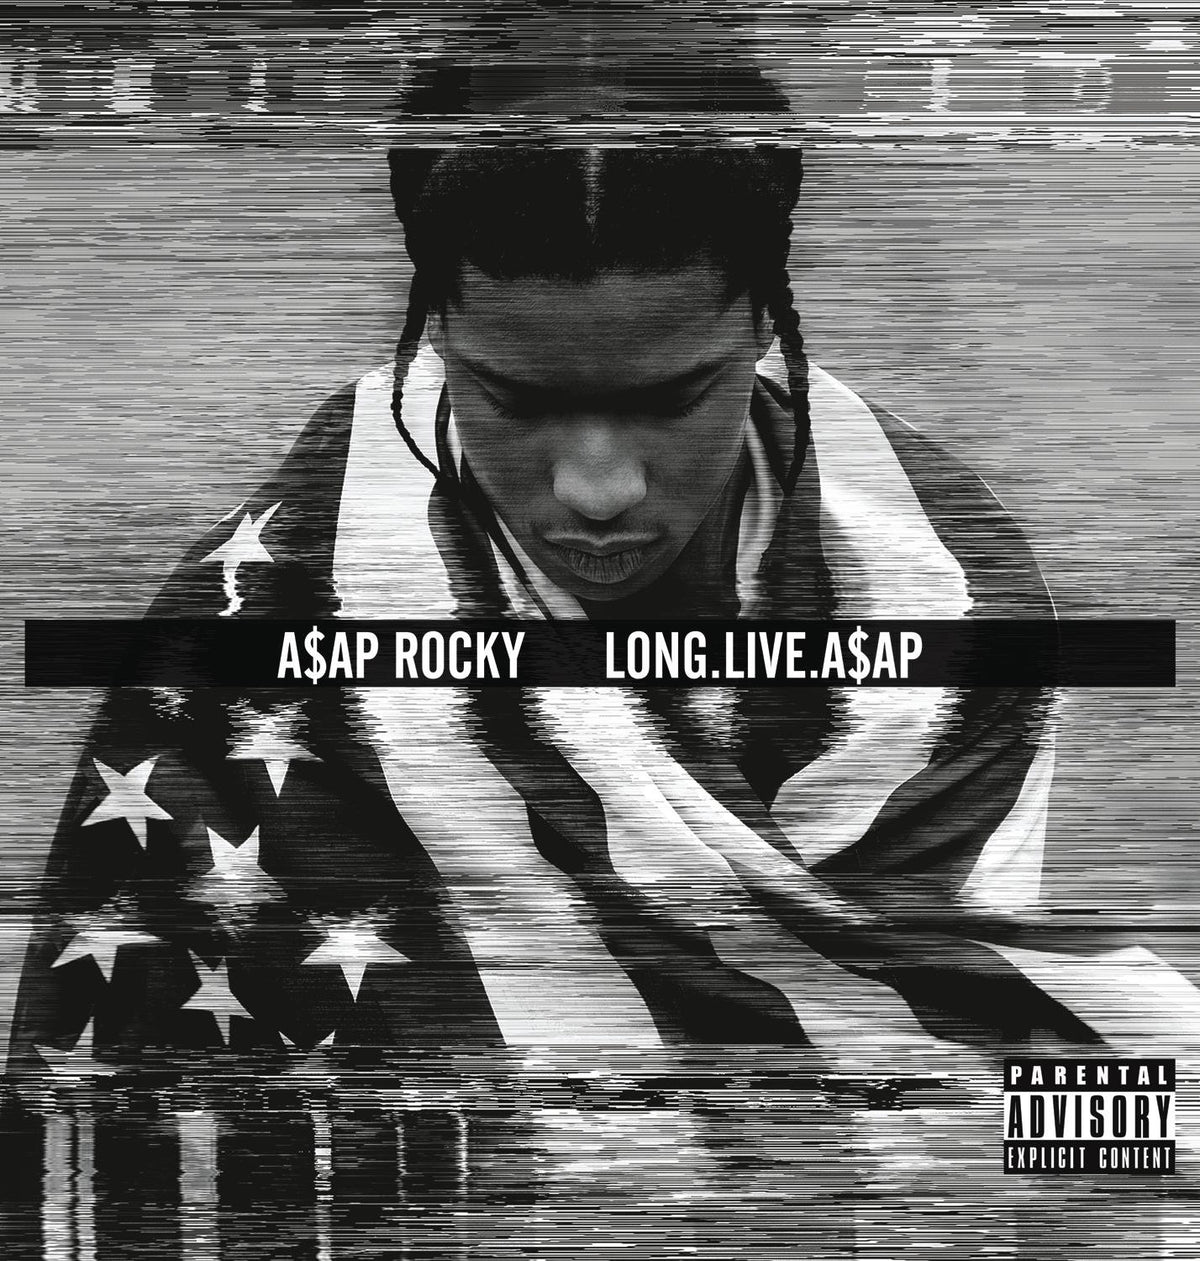 A$AP Rocky - Long.Live.A$AP 2LP (Orange Vinyl, Gatefold)